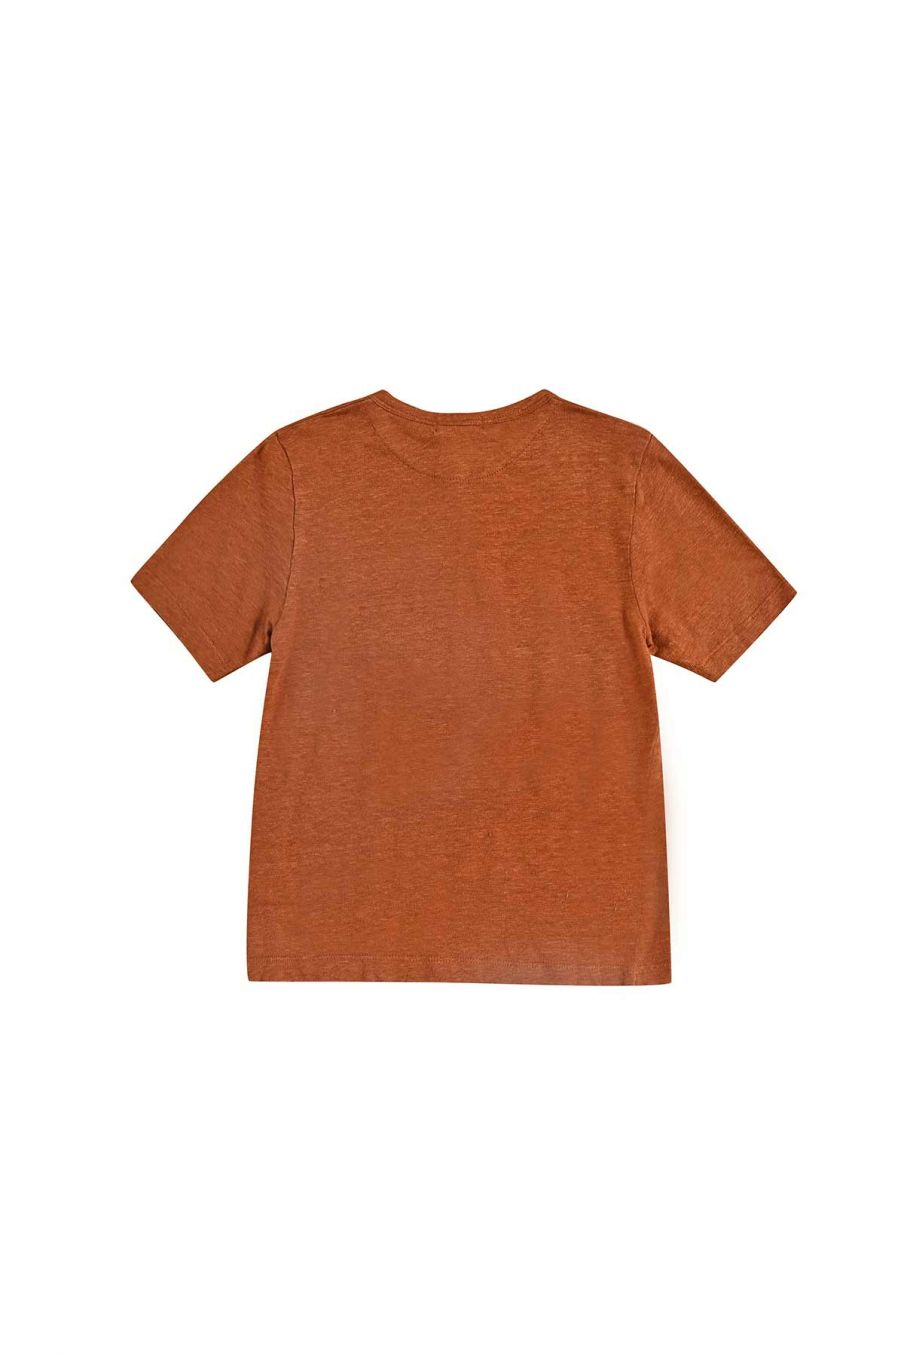 bebe-unisexe-t-shirt-tazo-cinnamon